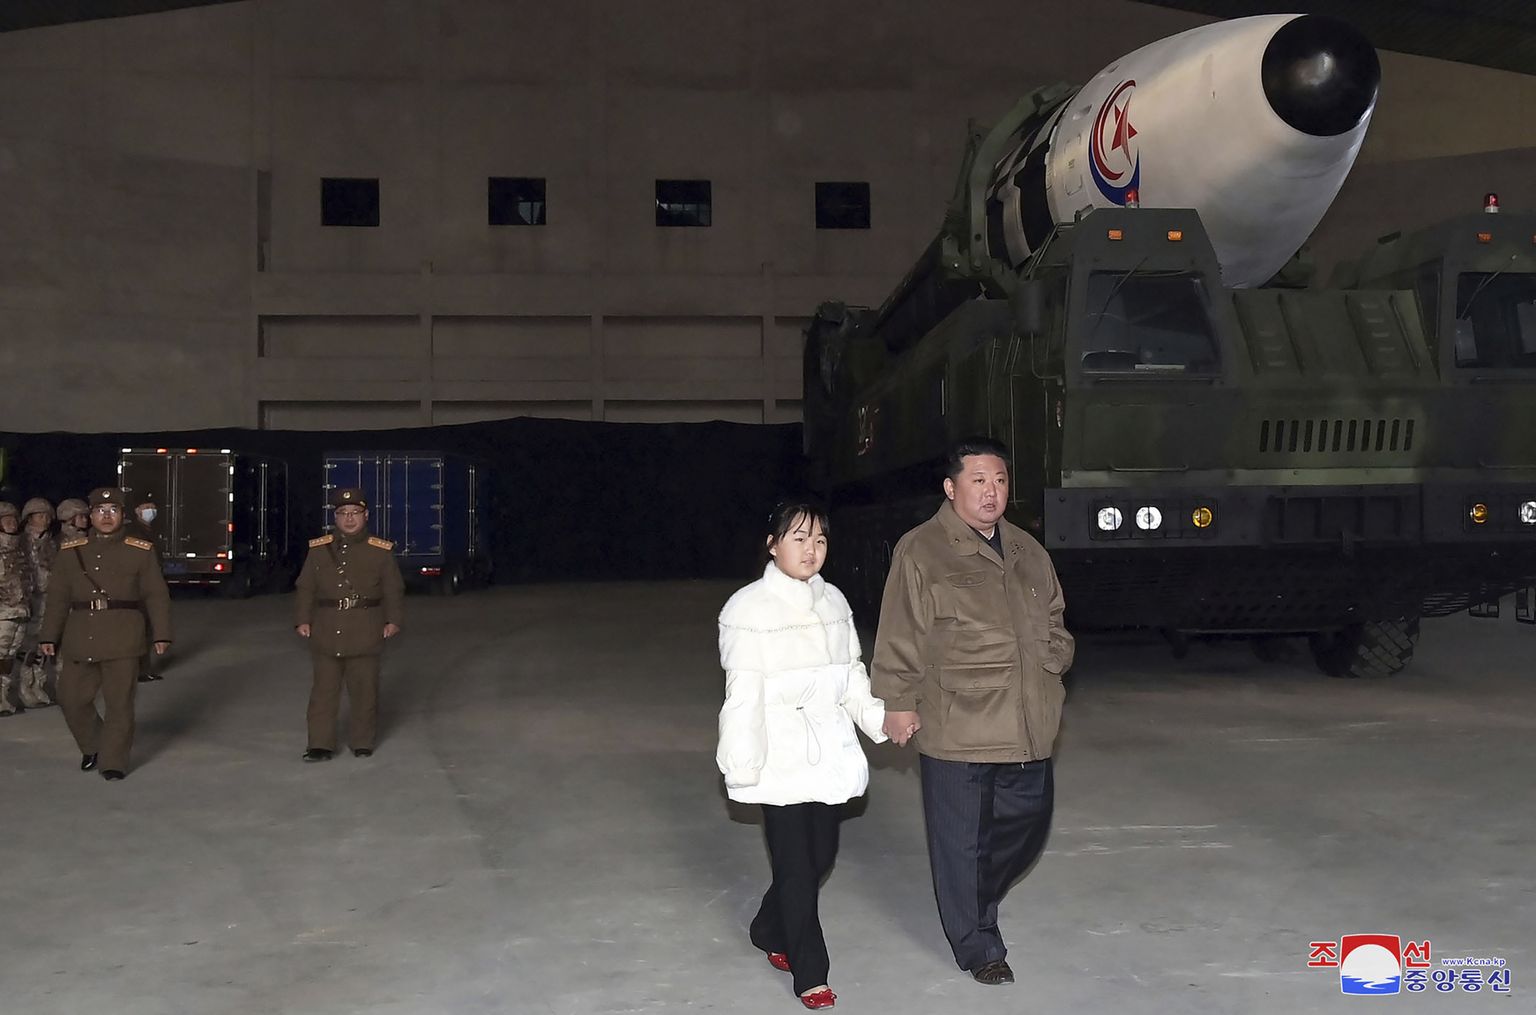 Põhja-Korea liide Kim Jong-un viis oma tütre mandritevahelise ballistilise raketi katsetust vaatama. Põhja-Korea meedia avaldas foto 19. novembril 2022